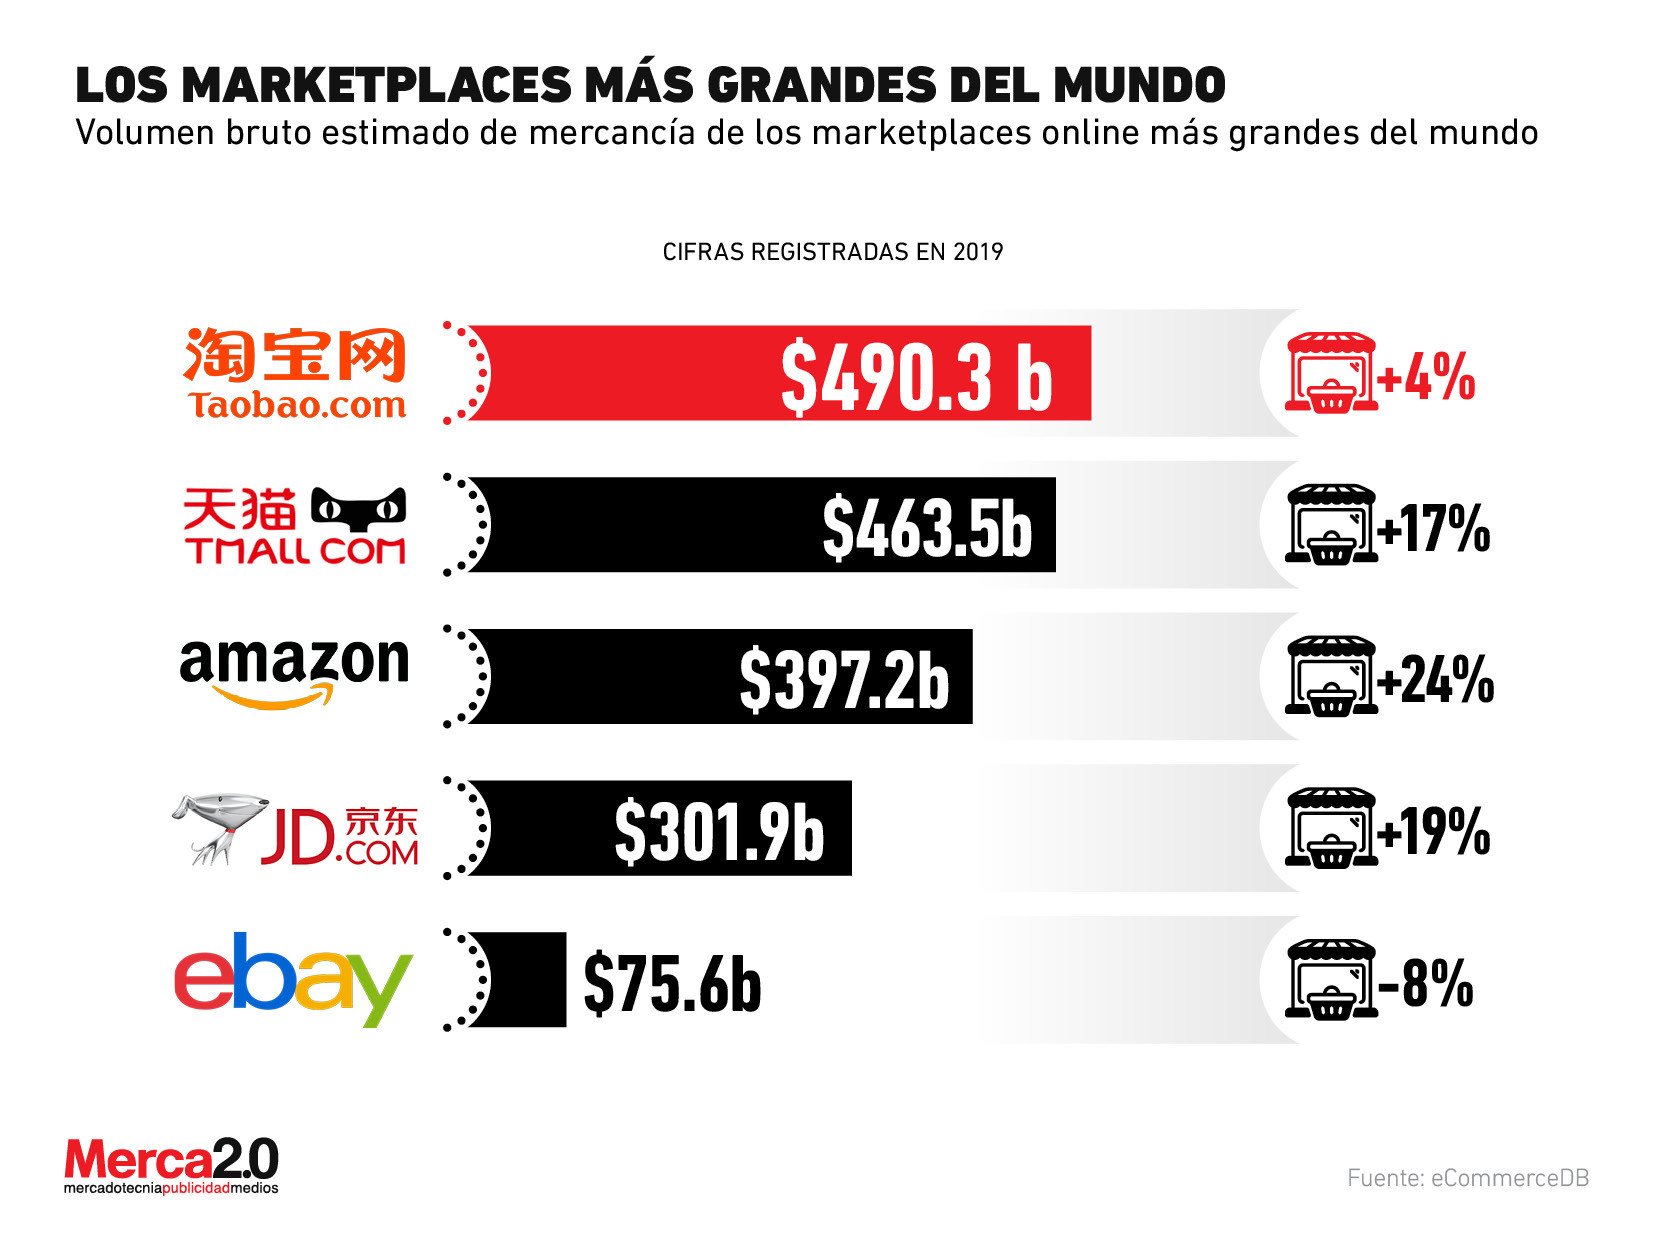 Amazon no es el gigante de los marketplaces, aún tiene rivales por superar